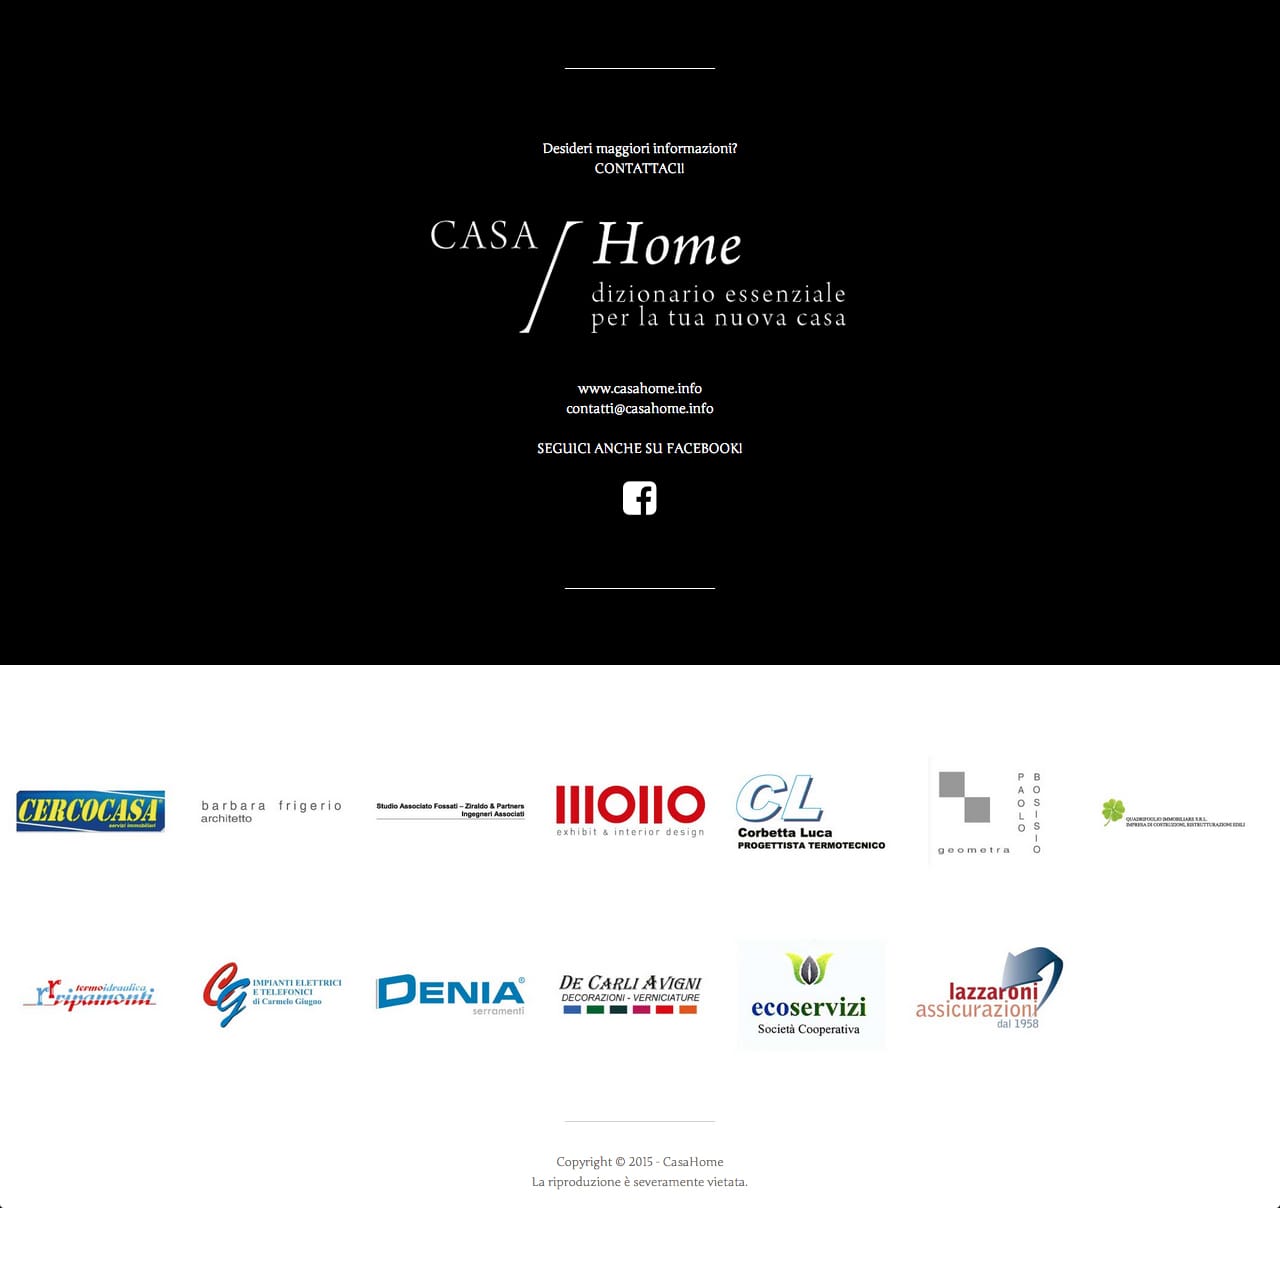 casa-home-interior-design-services-business-web-design-portfolio-casahome-footer